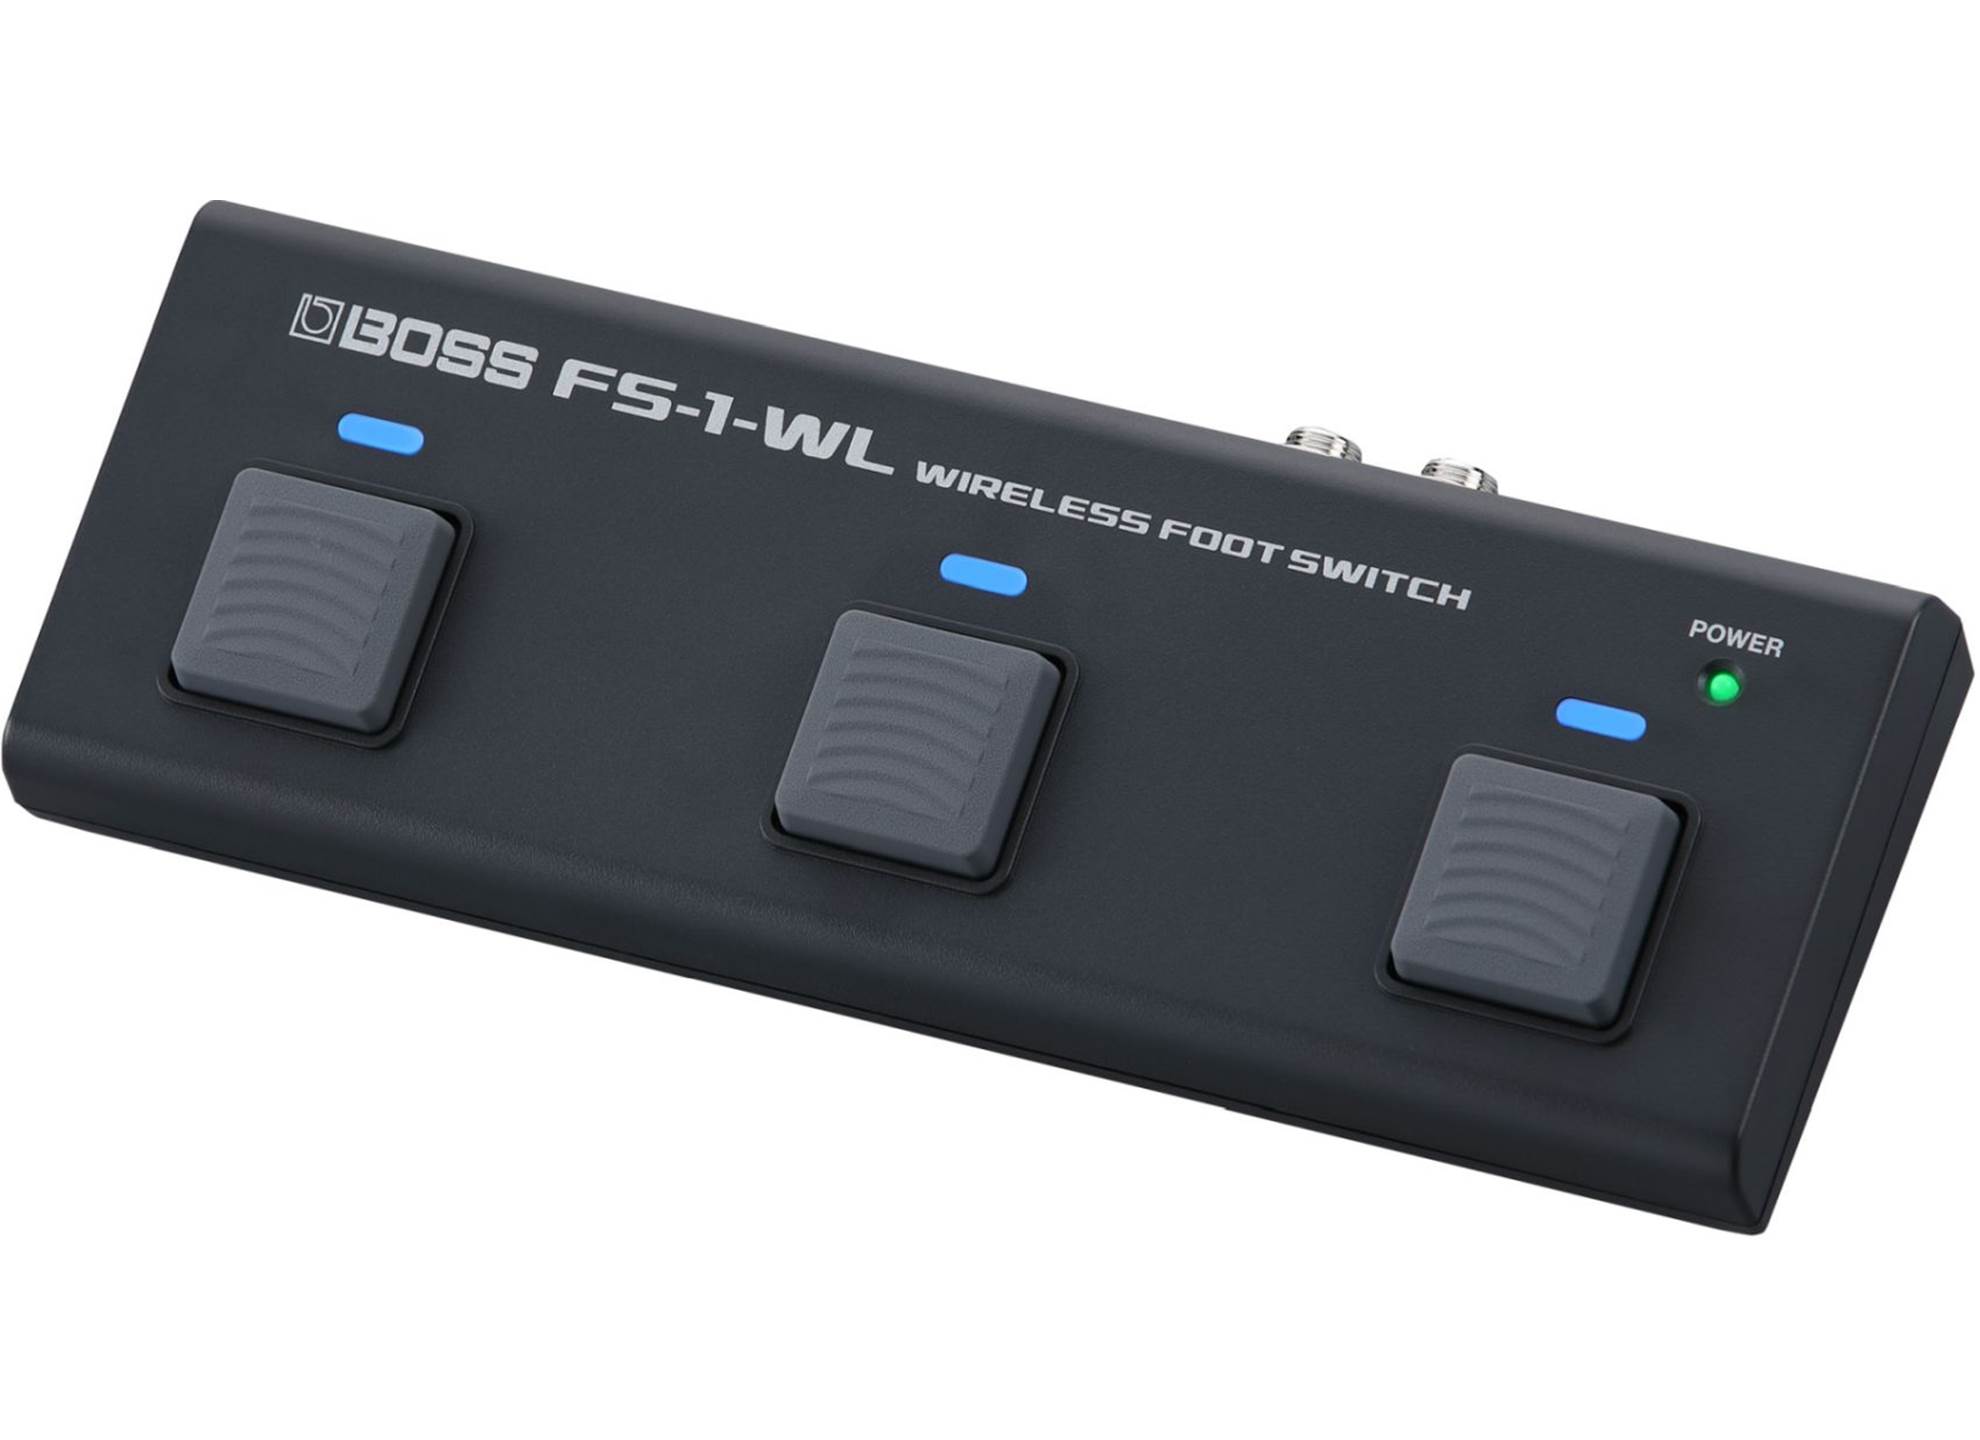 FS-1 Wireless Footswitch